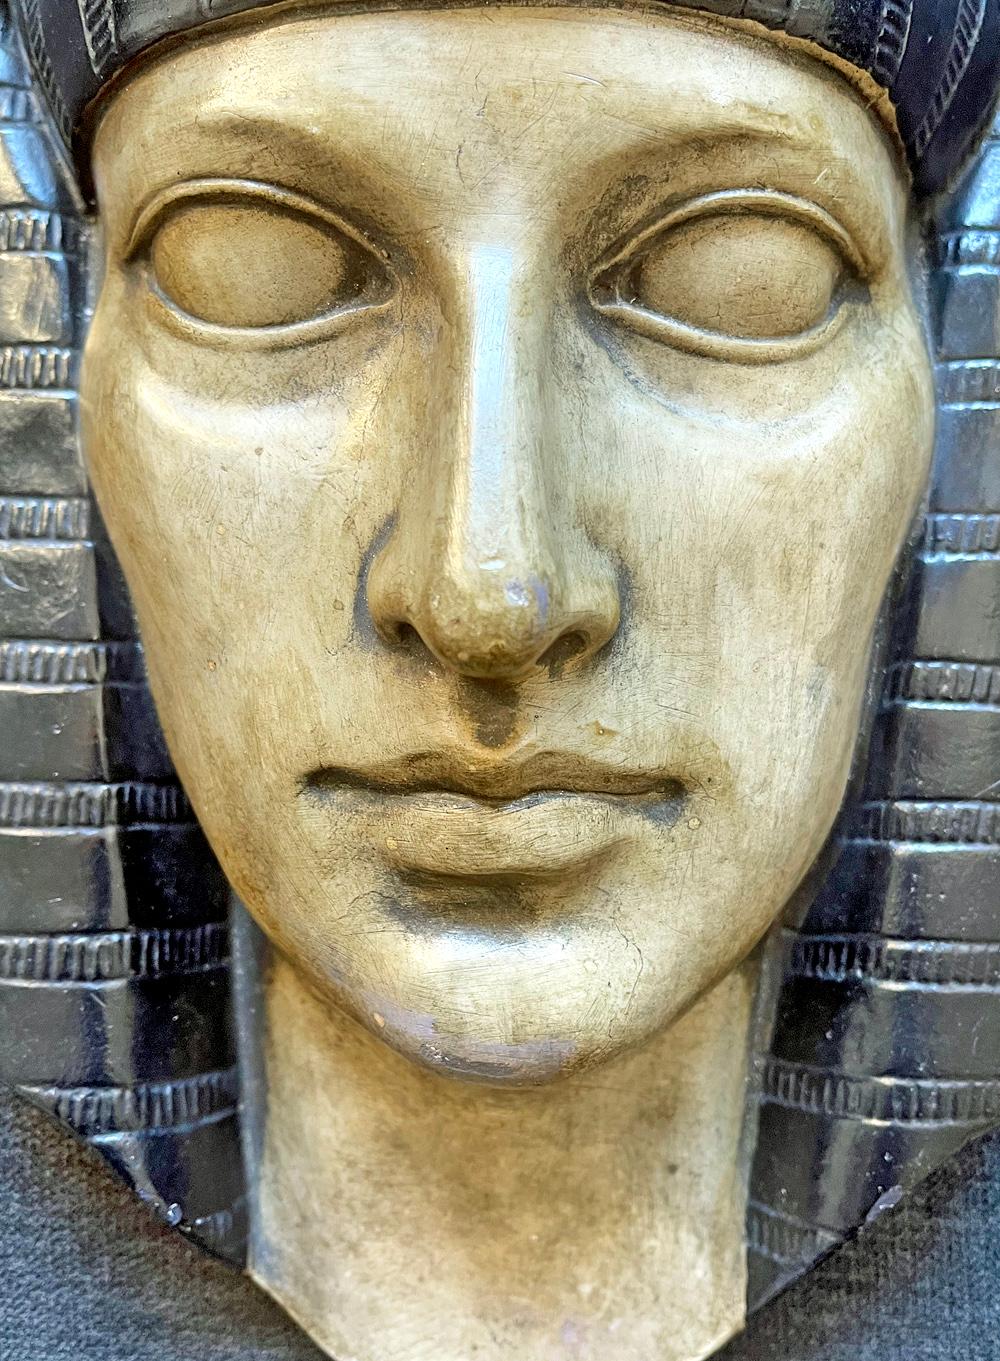 Diese wunderschön gearbeitete Wandskulptur zeigt den Kopf eines Pharaos mit vollen Lippen und großen Augen, über dem ein klassischer ägyptischer Kopfschmuck mit einem geflügelten Skarabäus angebracht ist. Die Skulptur besteht aus gegossenem Gips,